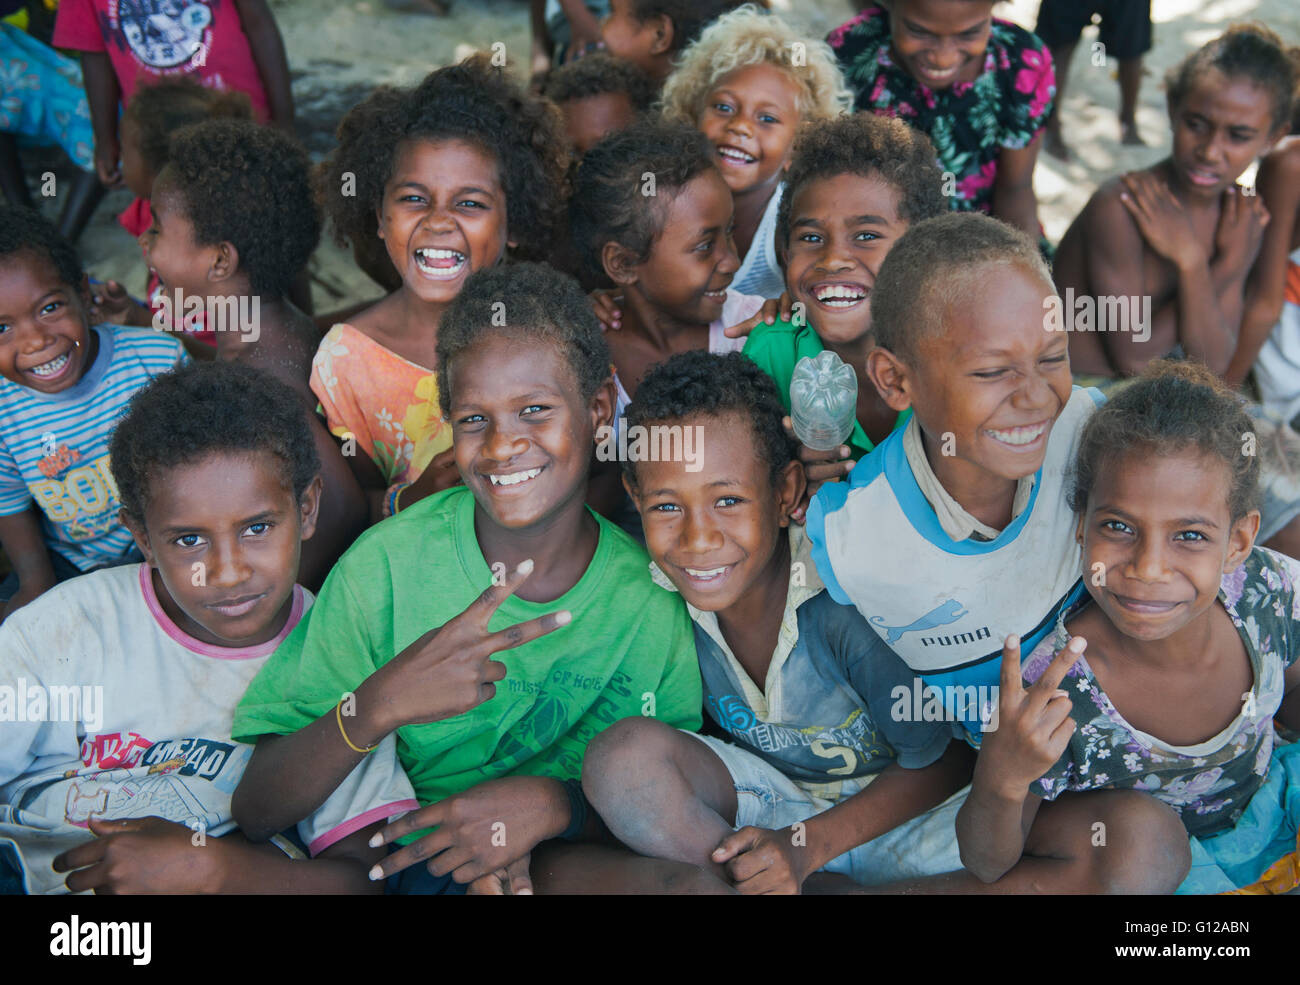 Los niños saludan a los visitantes, Owa Raha Island (Santa Ana), las Islas Salomón, en Melanesia Foto de stock